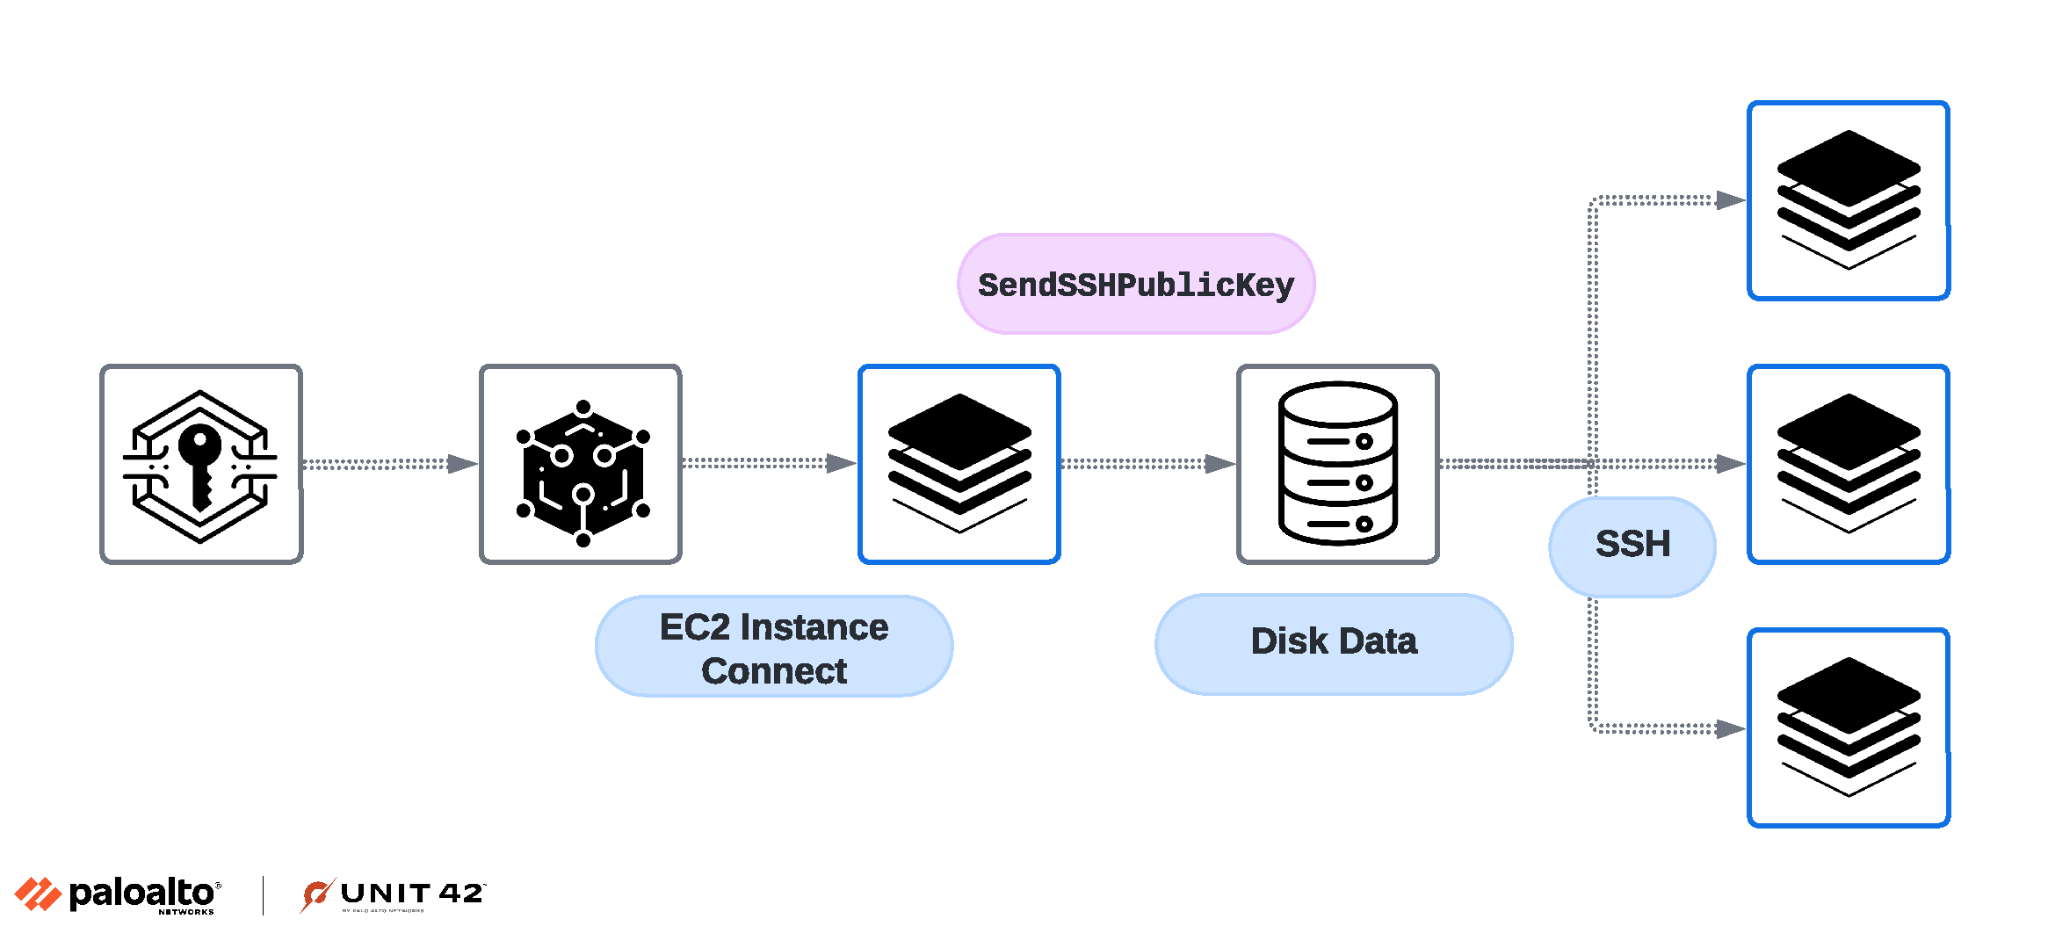 画像 4 は、EC2 Instance Connect サービスが SSH キー インジェクションにどのように使われるかを示すツリー図です。キー > データのアイコン > サーバーのアイコン > ディスク データのアイコンが並んでいます。ディスク データは、SSH というラベルが付いた 3 つのサーバーにブランチしています。 